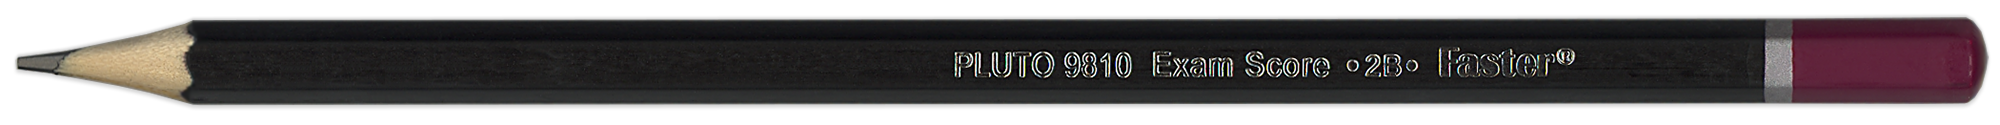 pluto_9810